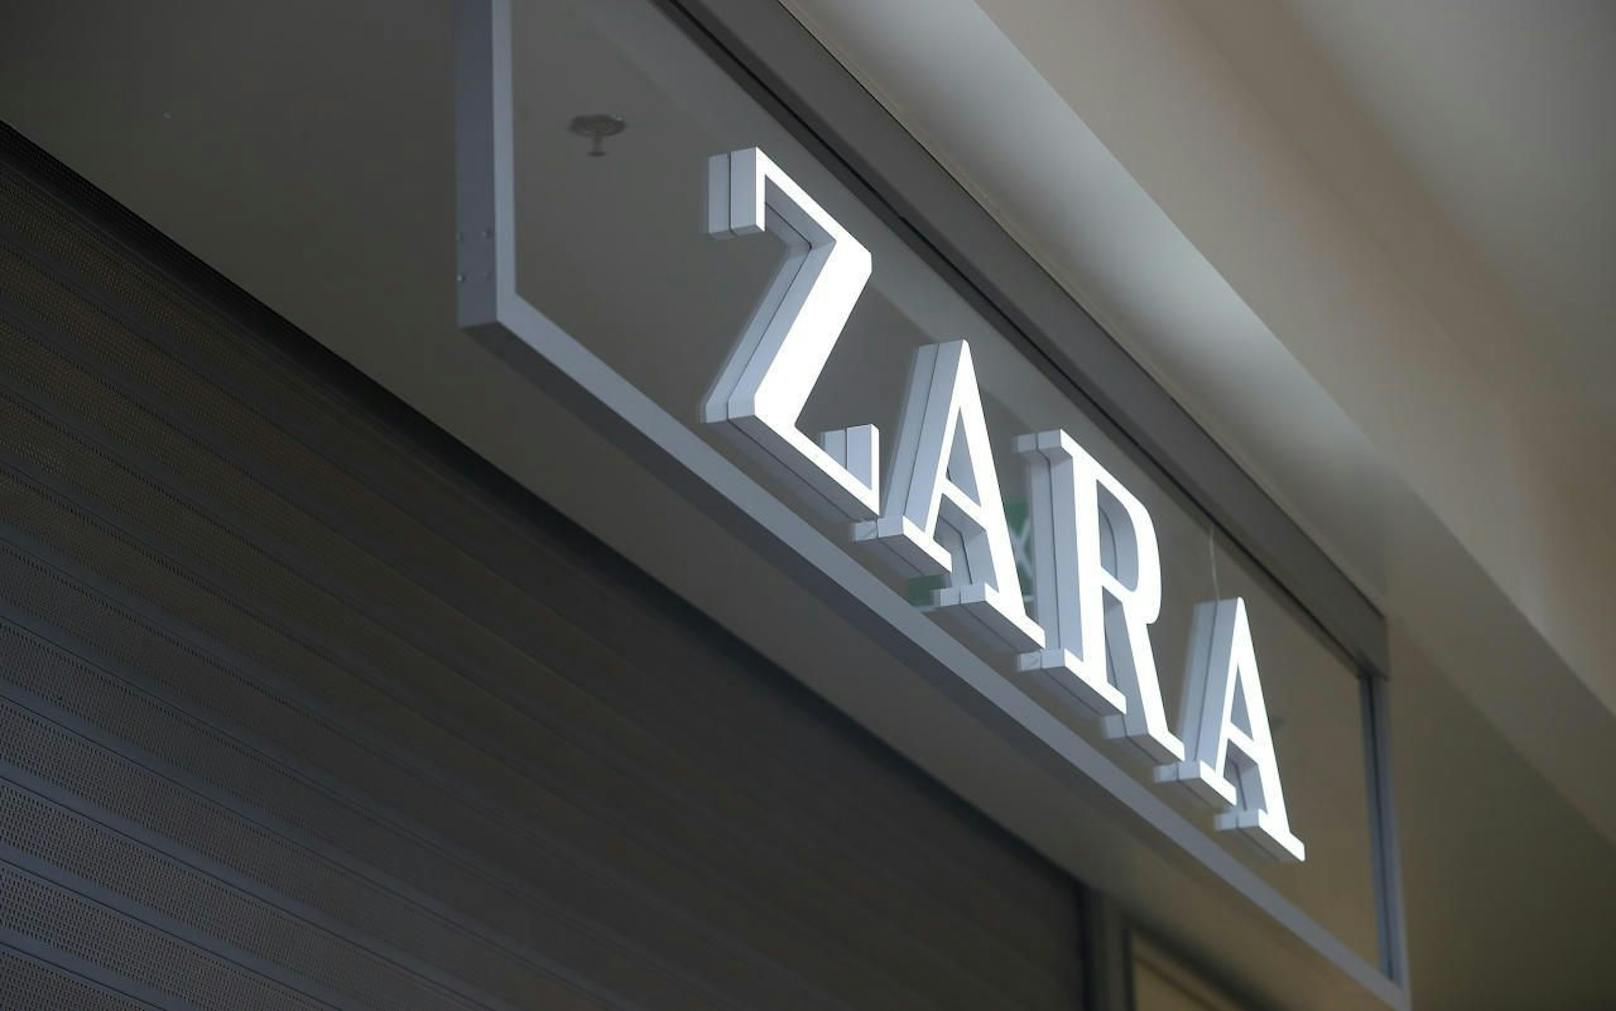 Schwere Vorwürfe gegen den Moderiesen Zara.